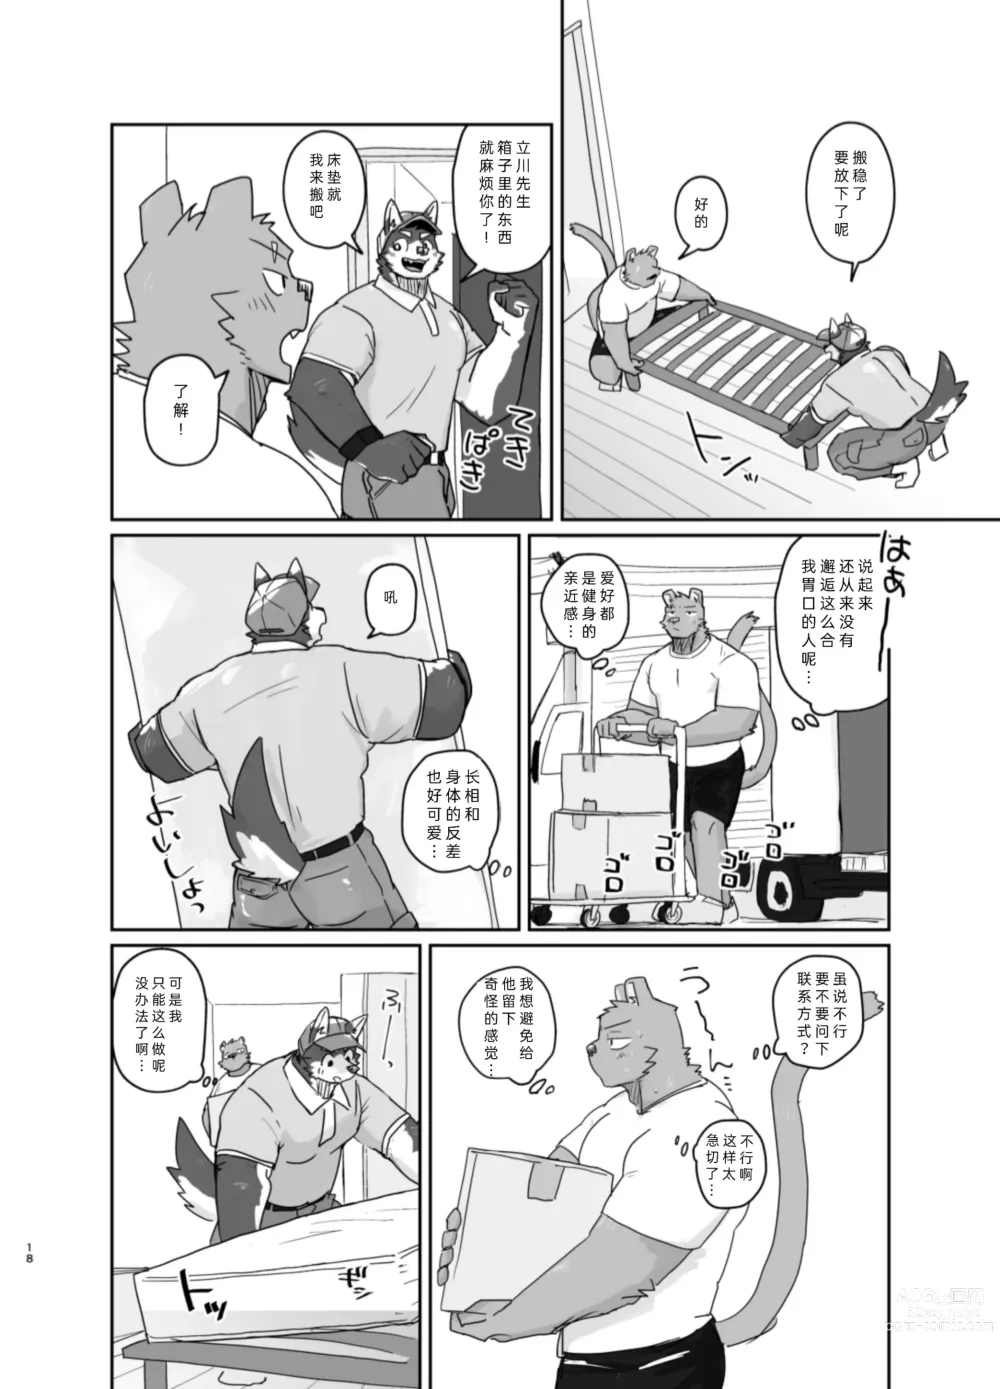 Page 18 of doujinshi 搬家的十分钟服务